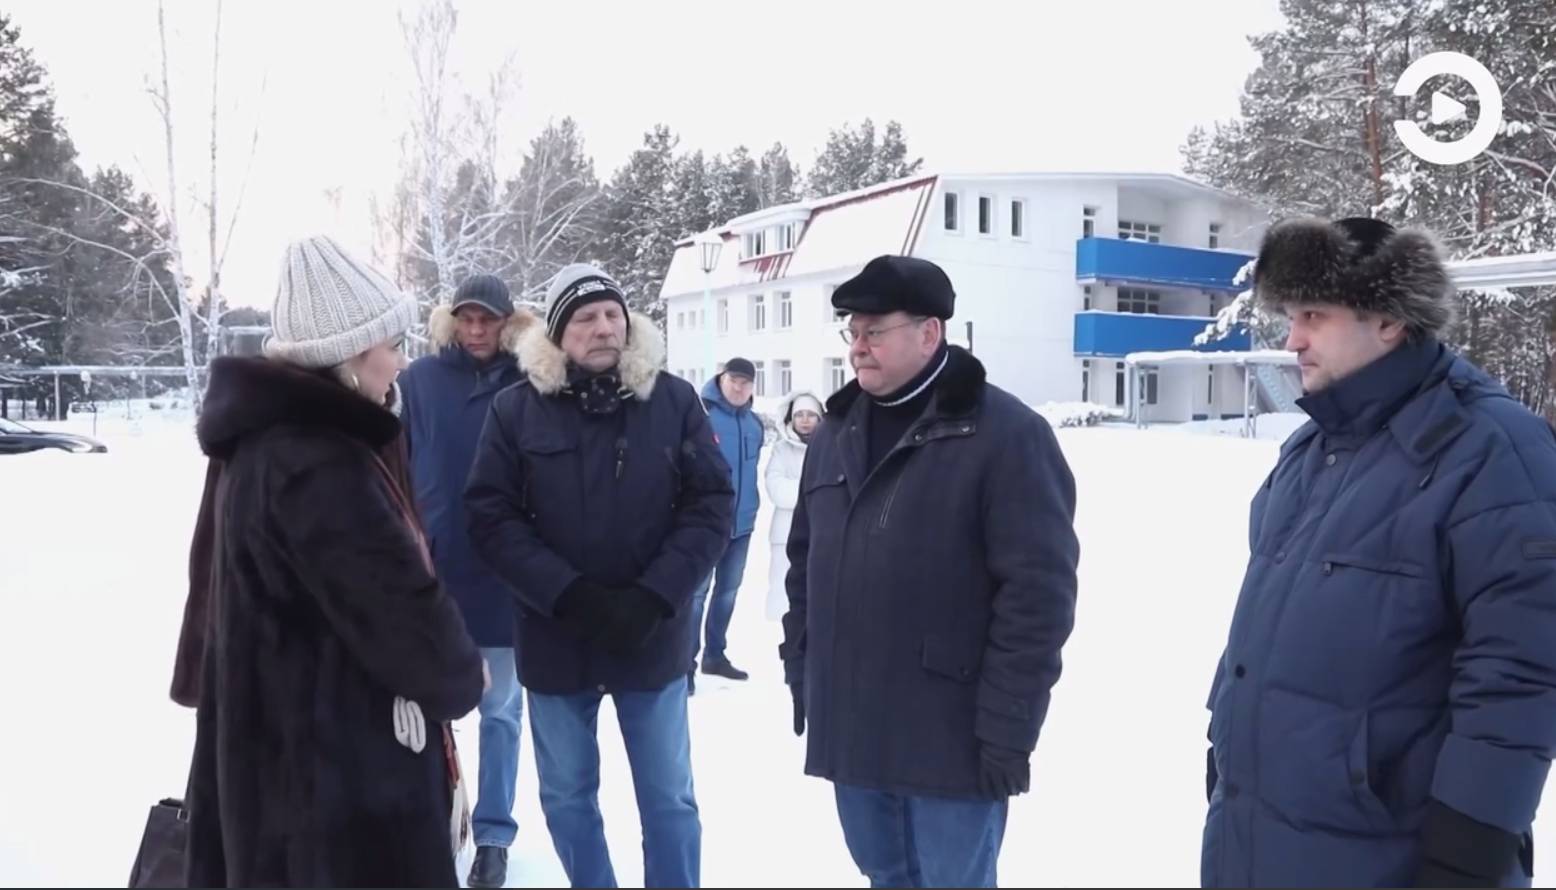 Губернатор Олег Мельниченко проверил, как разместились дети, прибывшие из Белгорода